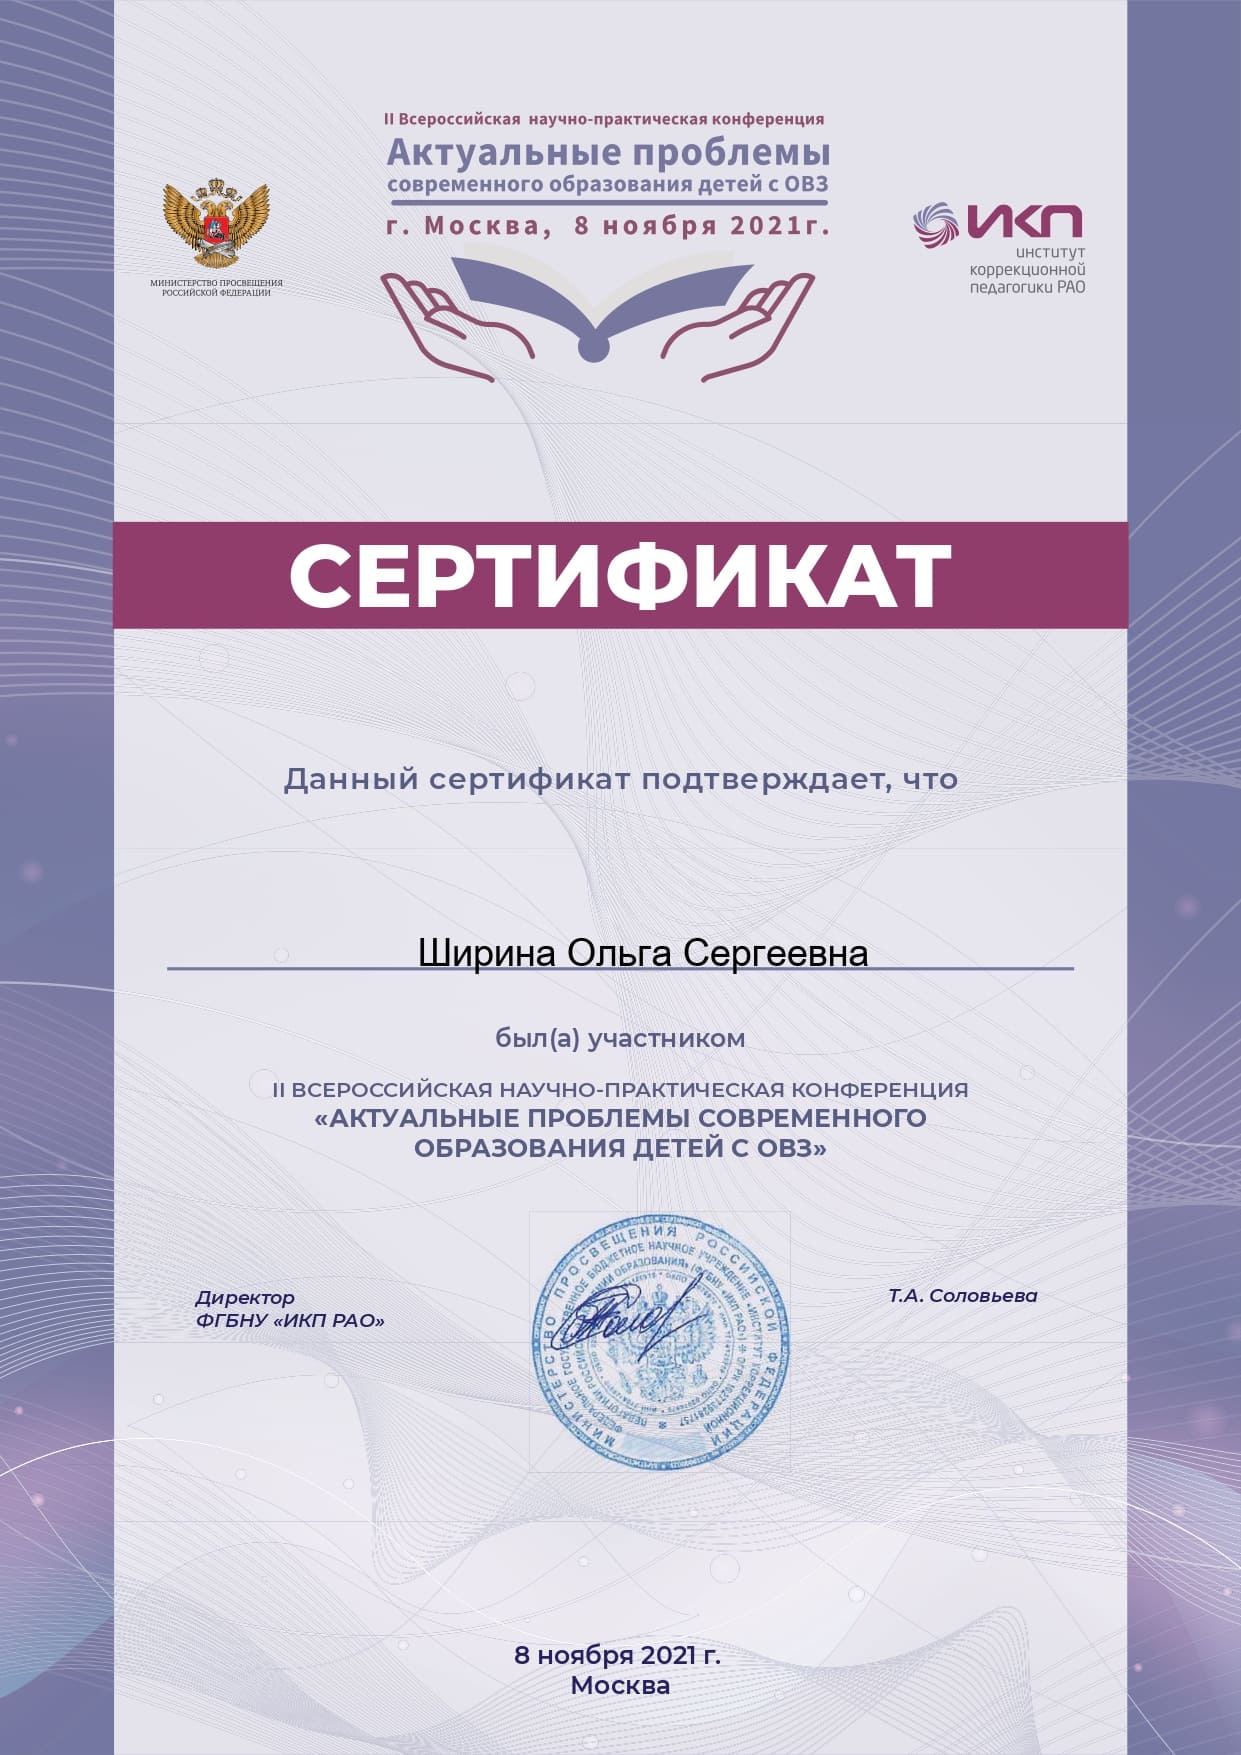 сертификат page 0001 1